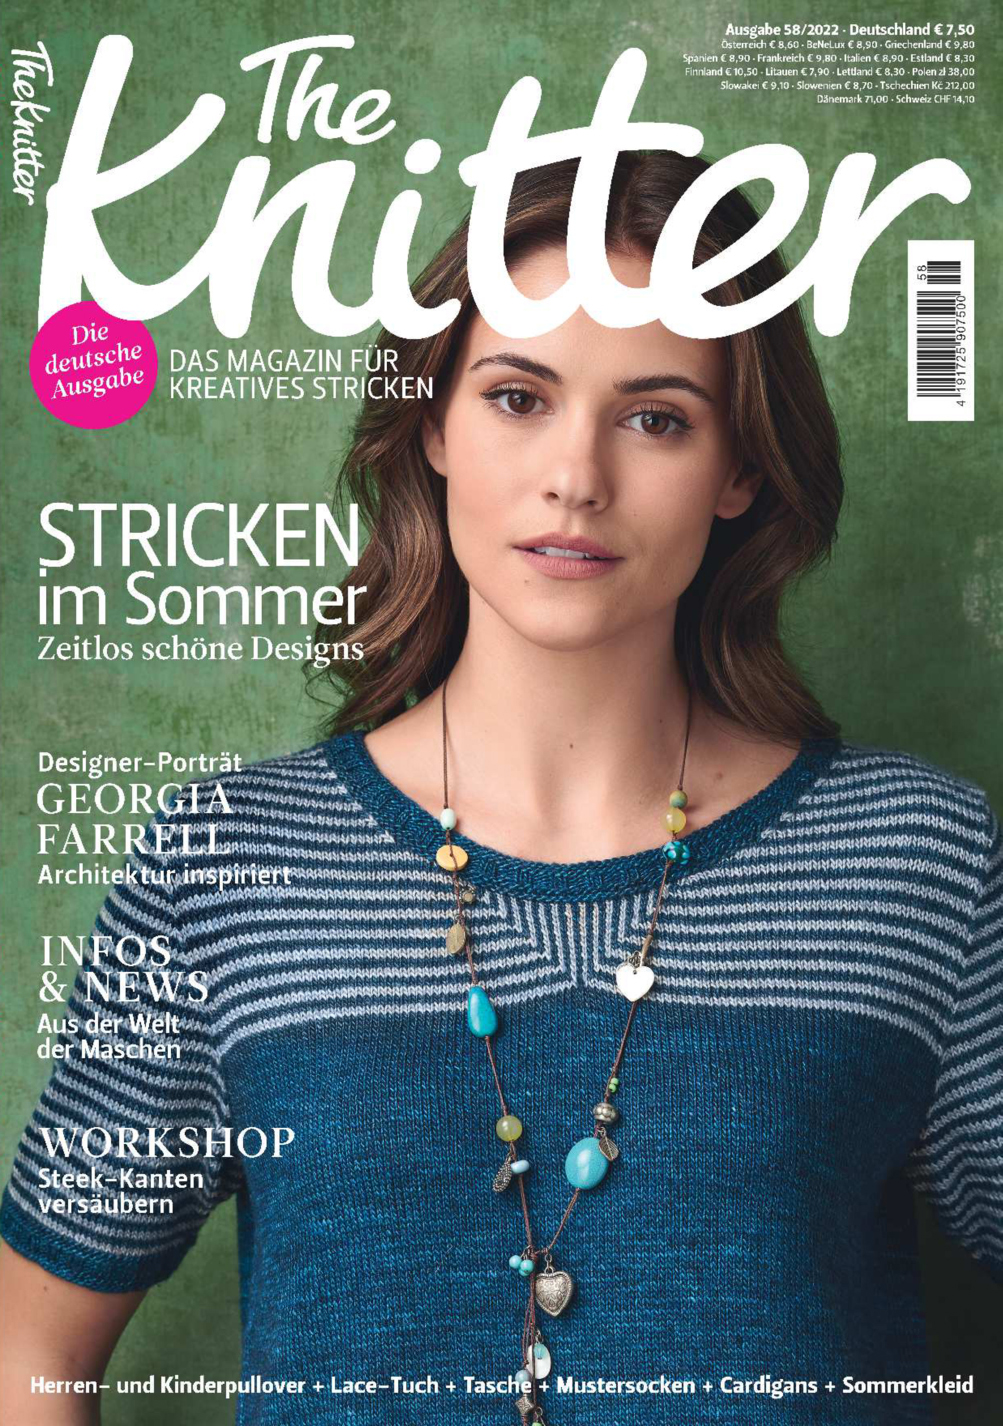 The Knitter 58/2022 - Stricken im Sommer